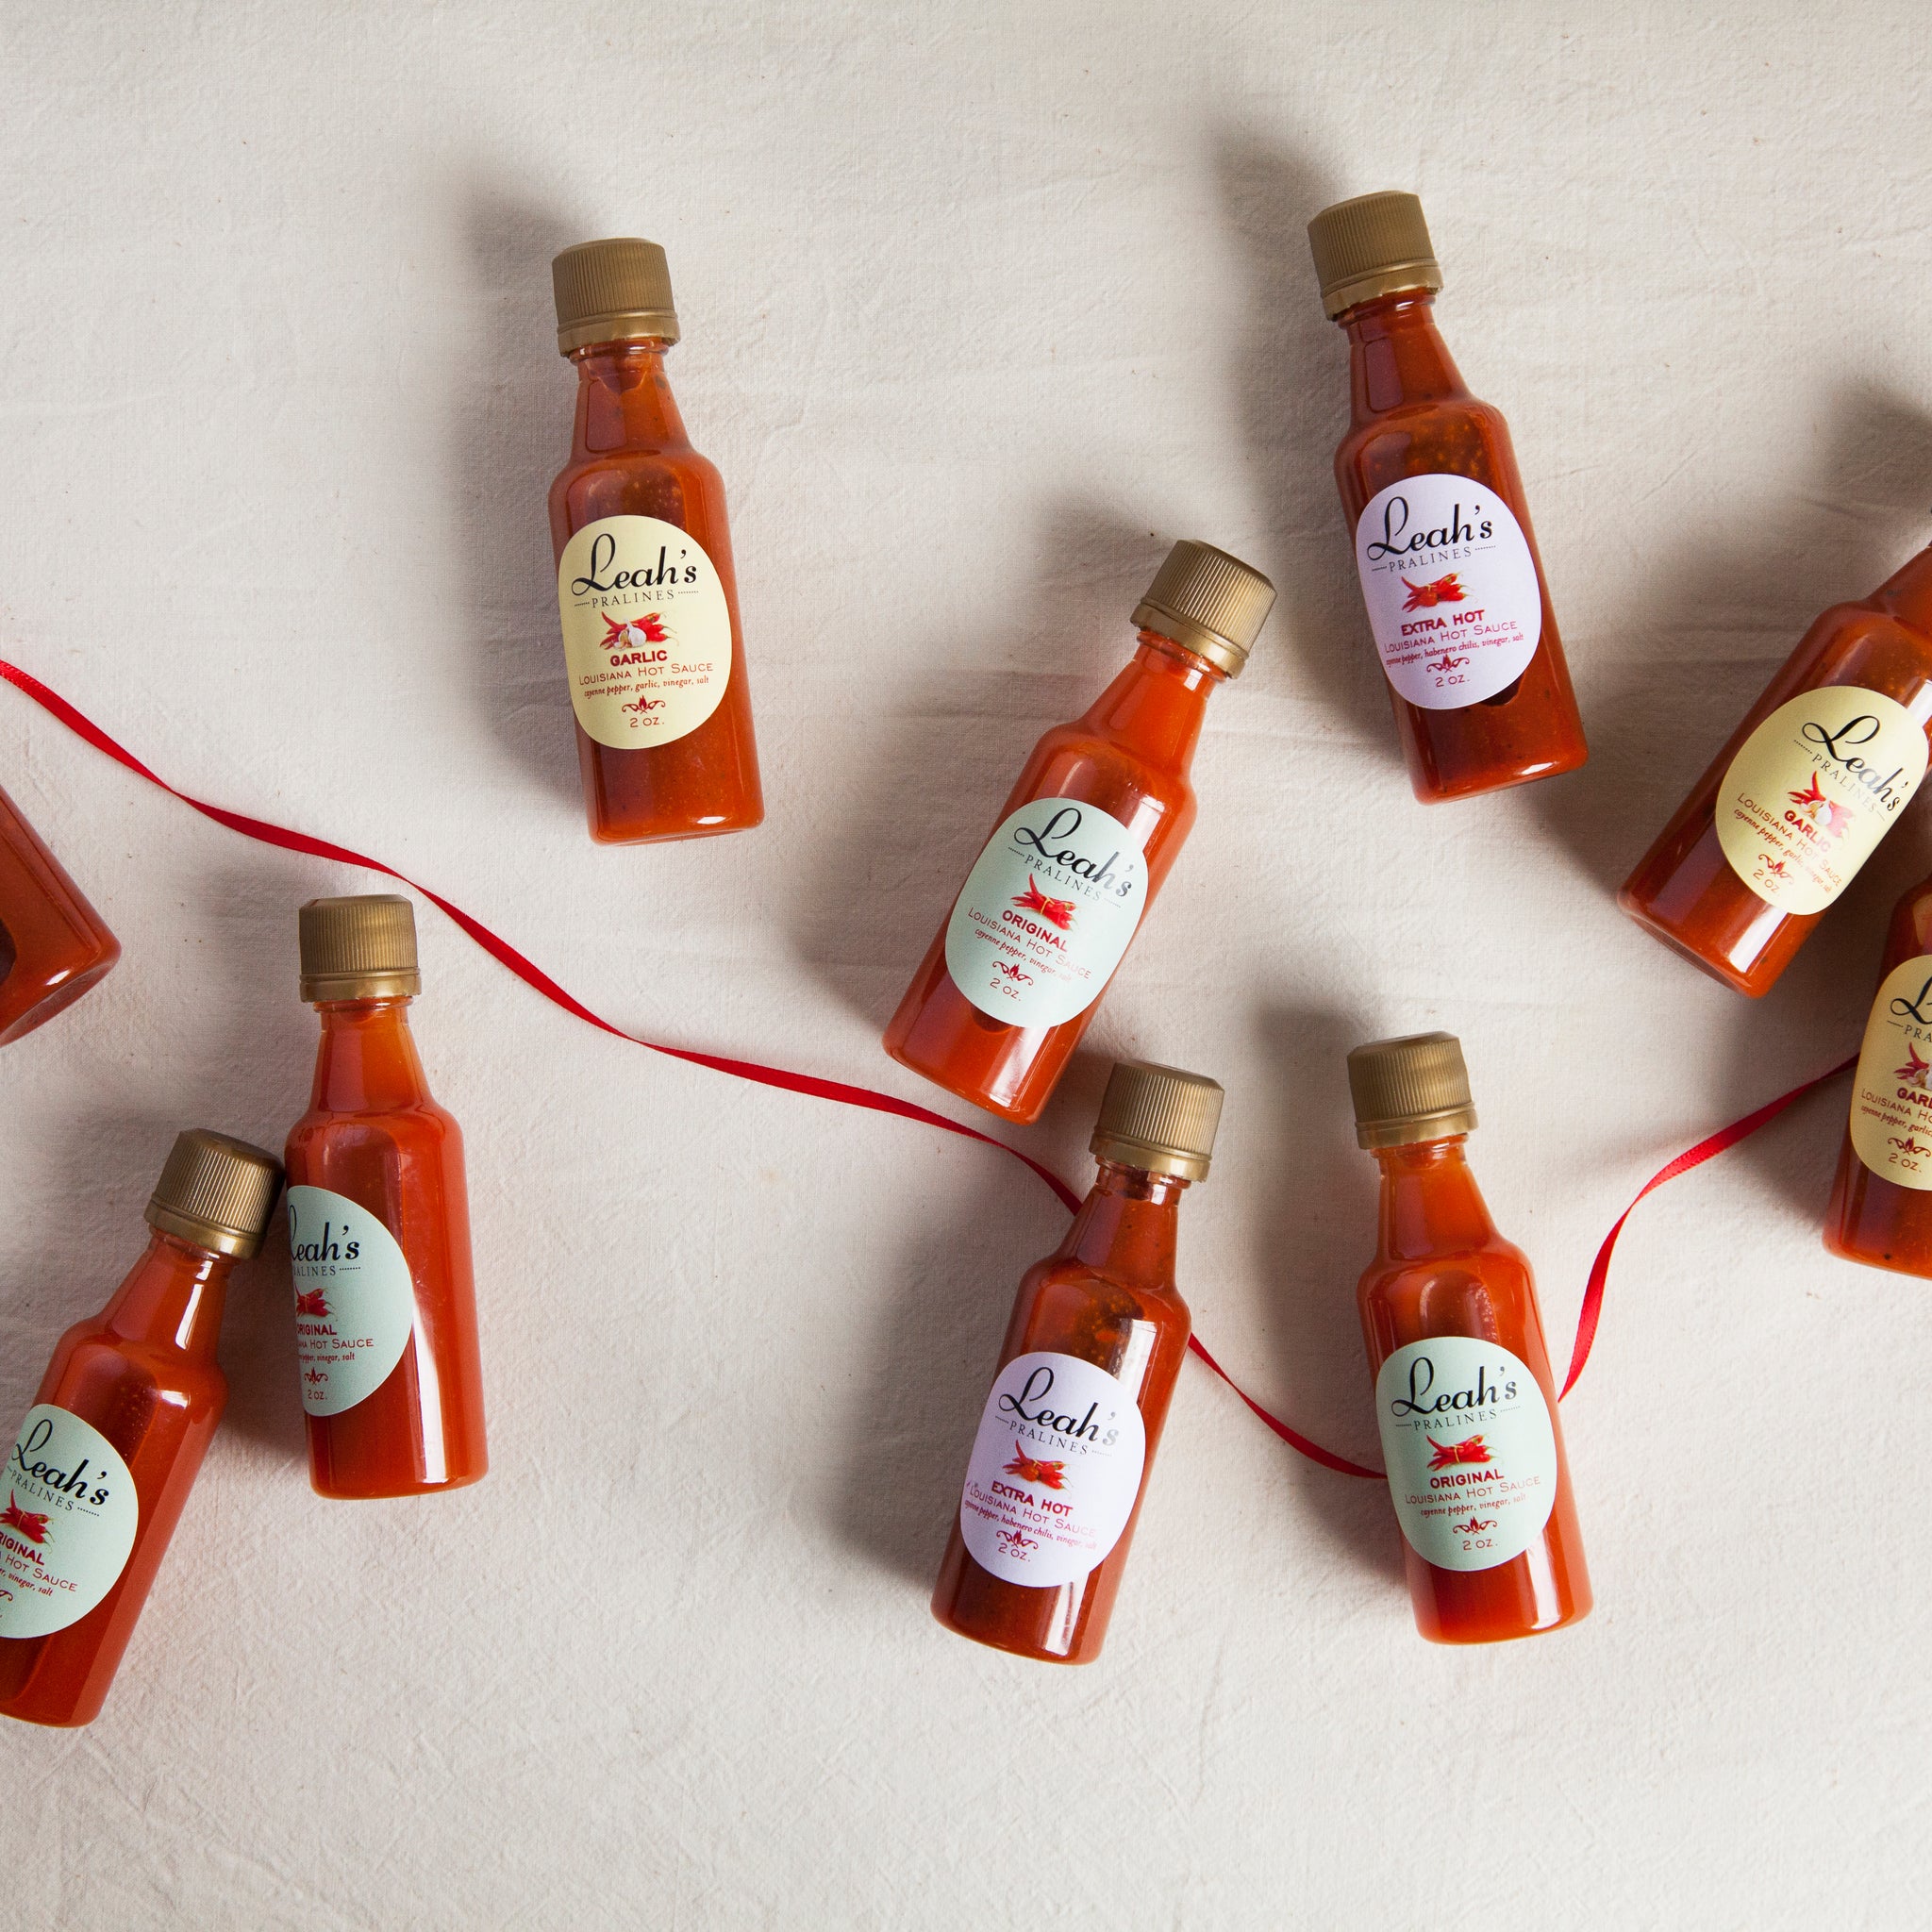 small louisiana hot sauce bottles